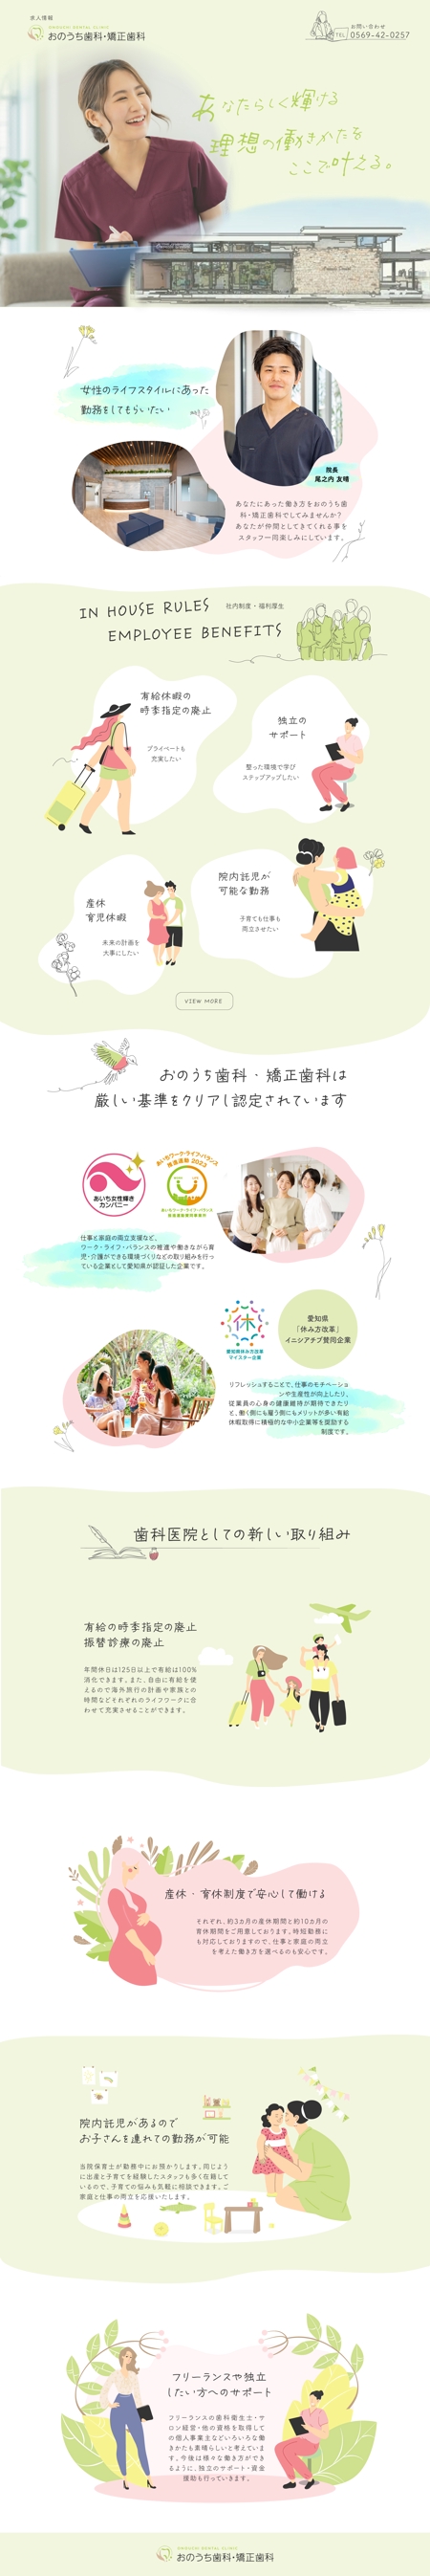 株式会社SANCYO (tanoshika0942)さんの歯科医院で女性が働きたいと思えるHPデザインへの提案